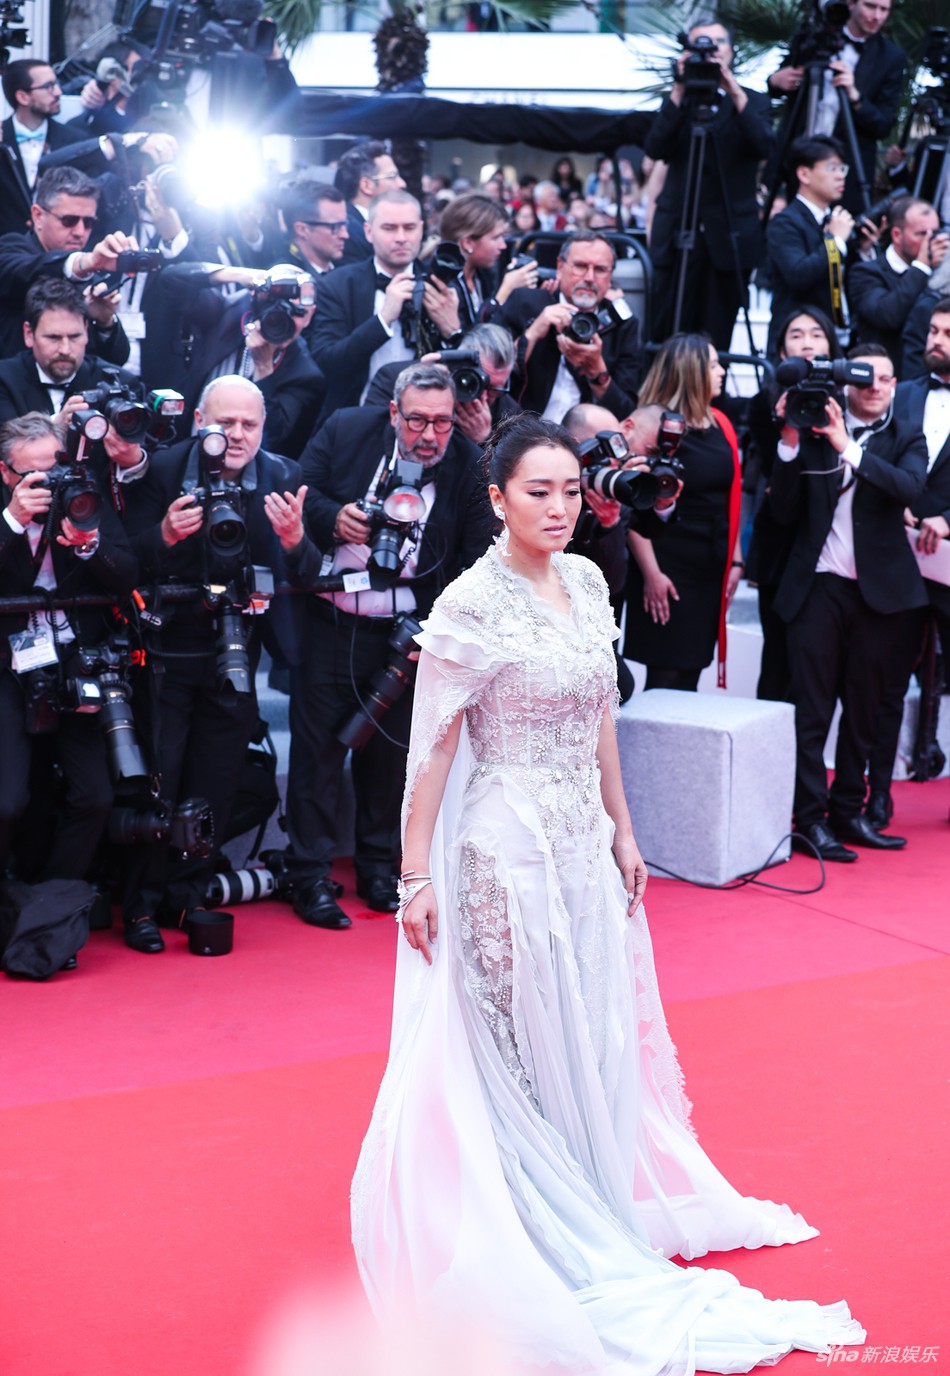 Ham váy vóc tùng xòe, Jessica suýt ngã và phải nhờ 2 người nâng váy tại thảm đỏ Cannes 2019-1